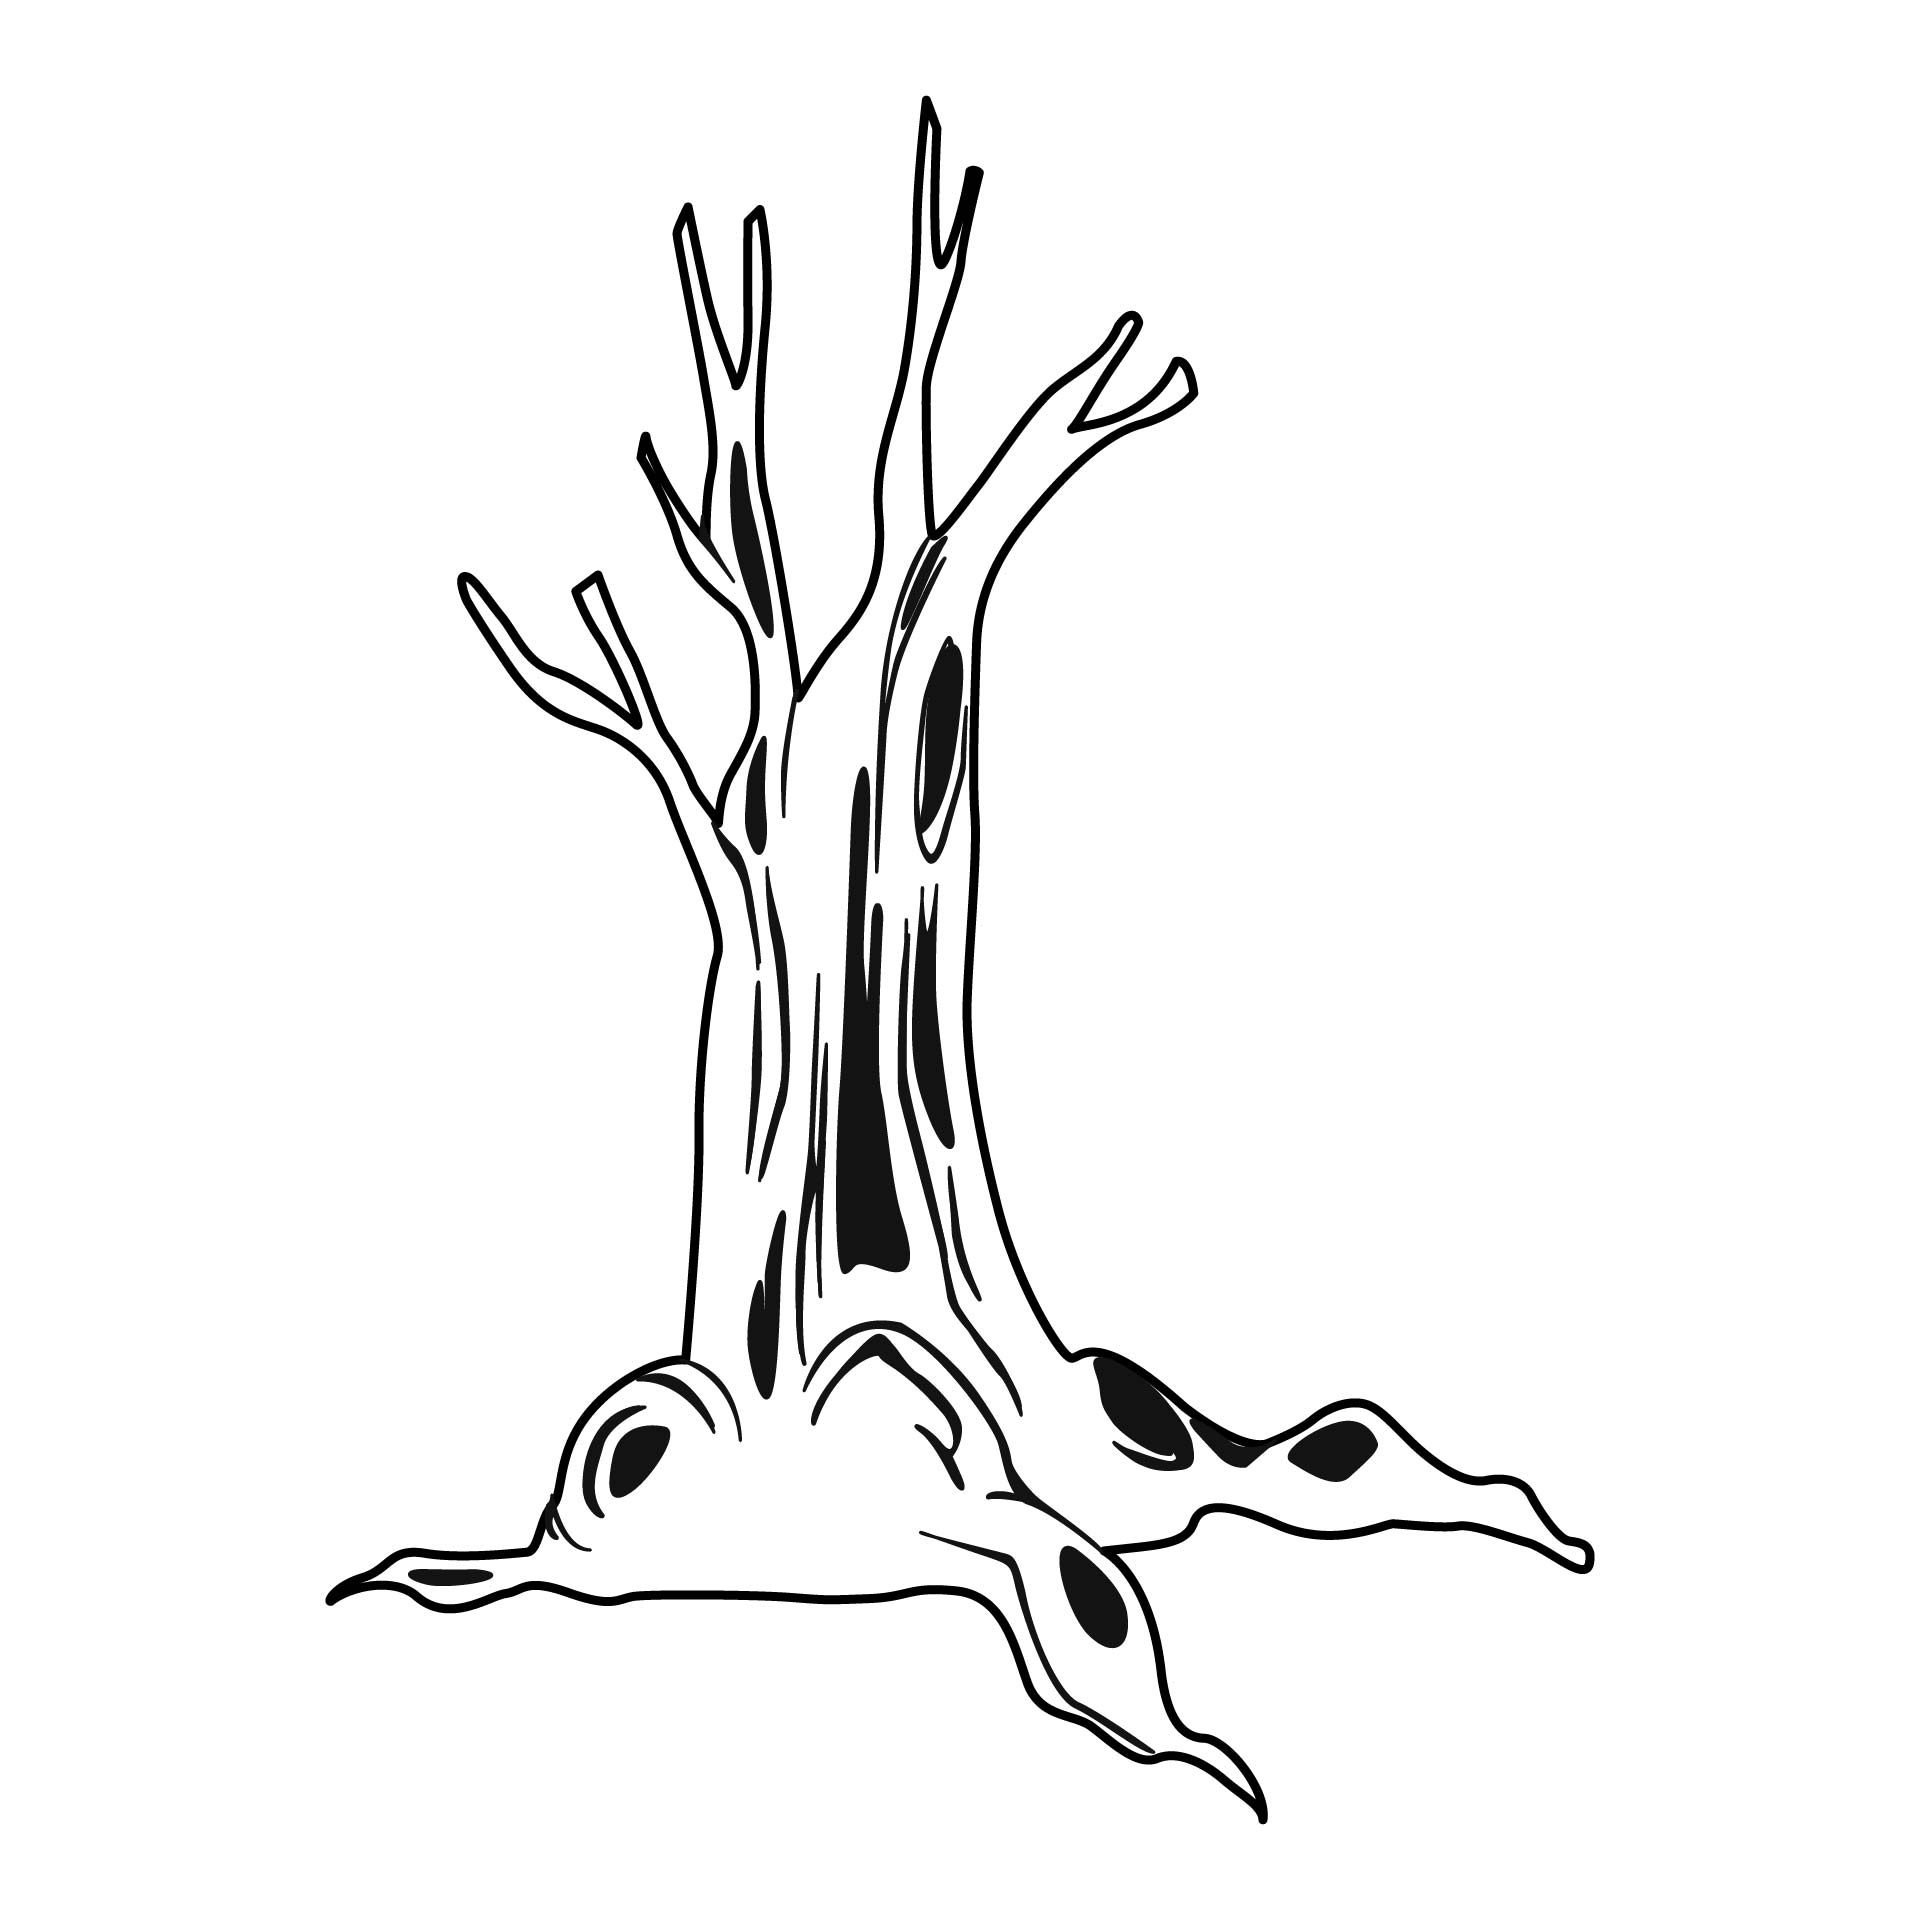 10-best-tree-trunk-pattern-printable-pdf-for-free-at-printablee